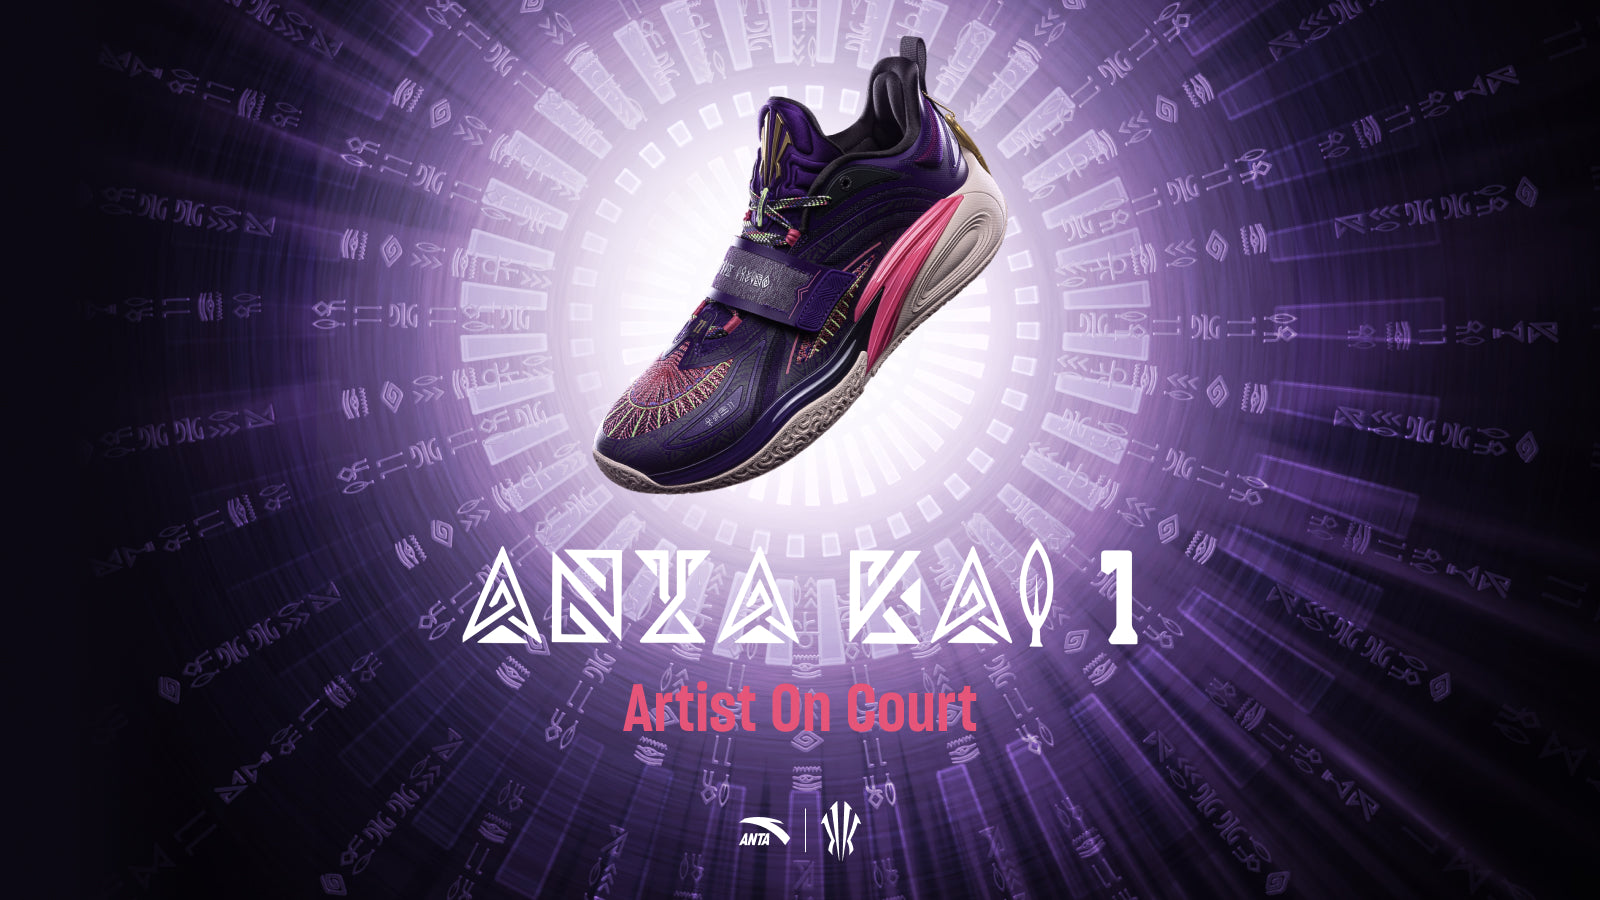 ANTA KAI 1 "Artist On Court"